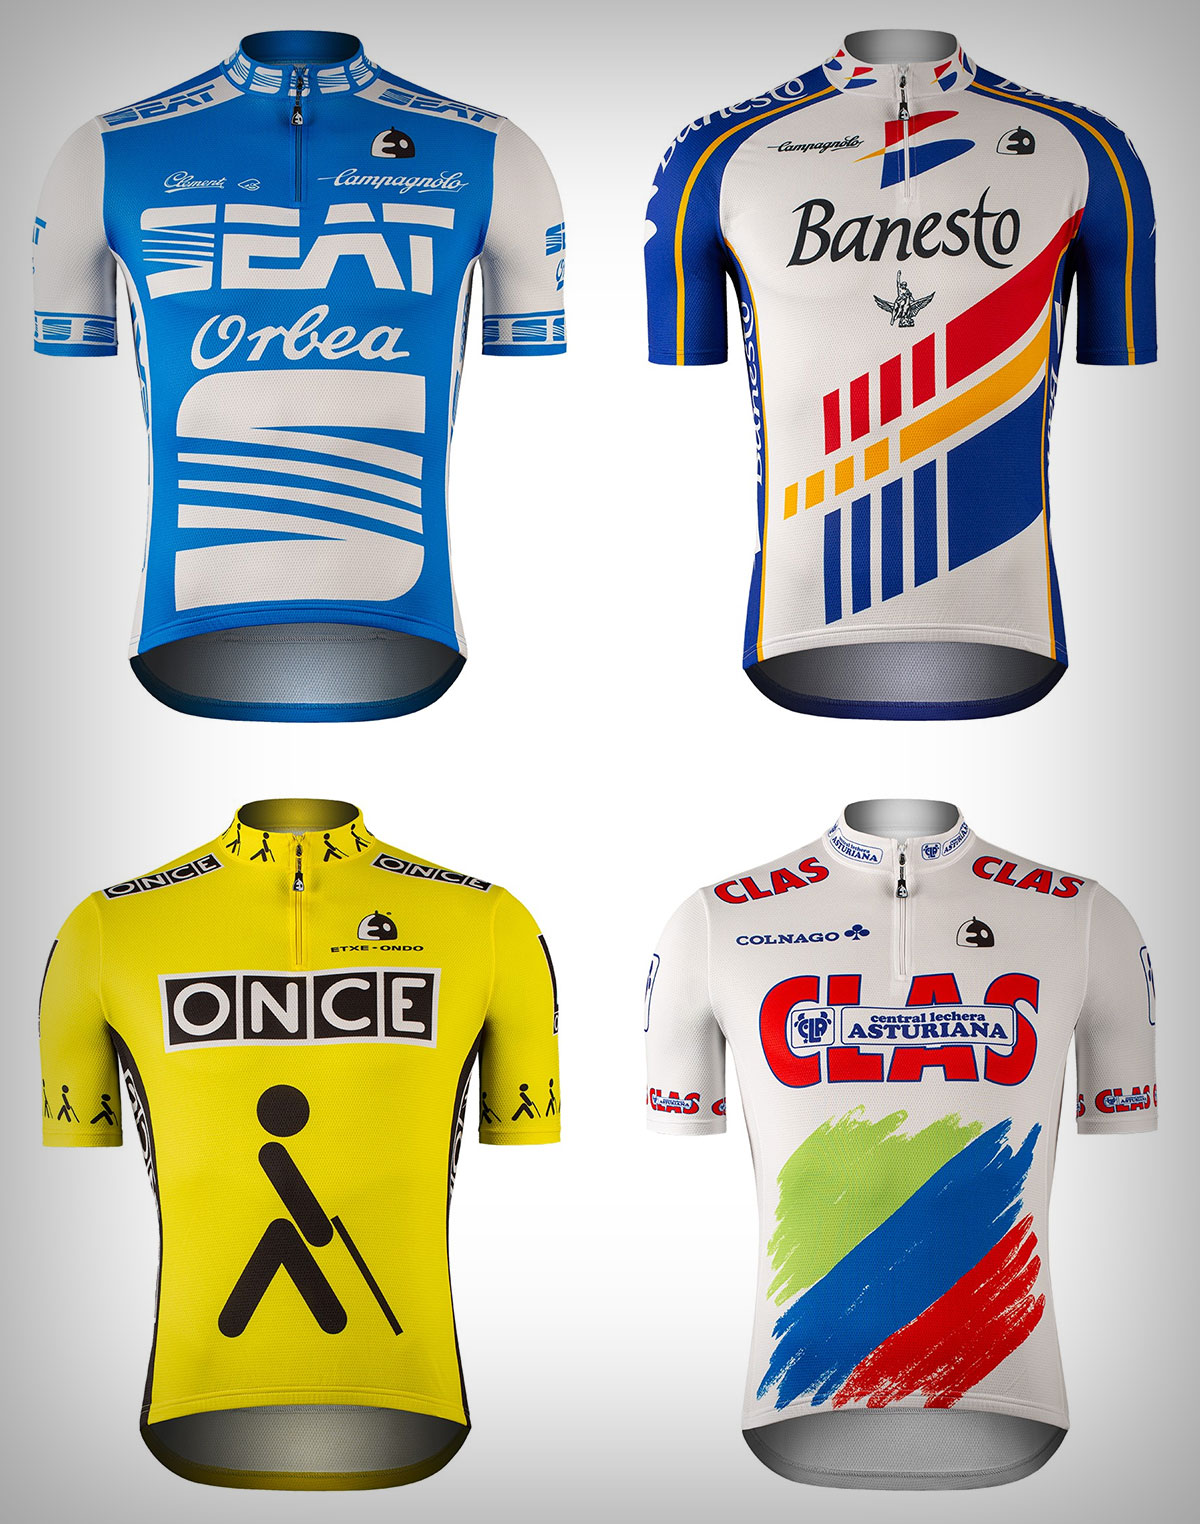 Etxeondo presenta una versión actualizada de los míticos maillots de los equipos SEAT Orbea, Clas, ONCE y Banesto